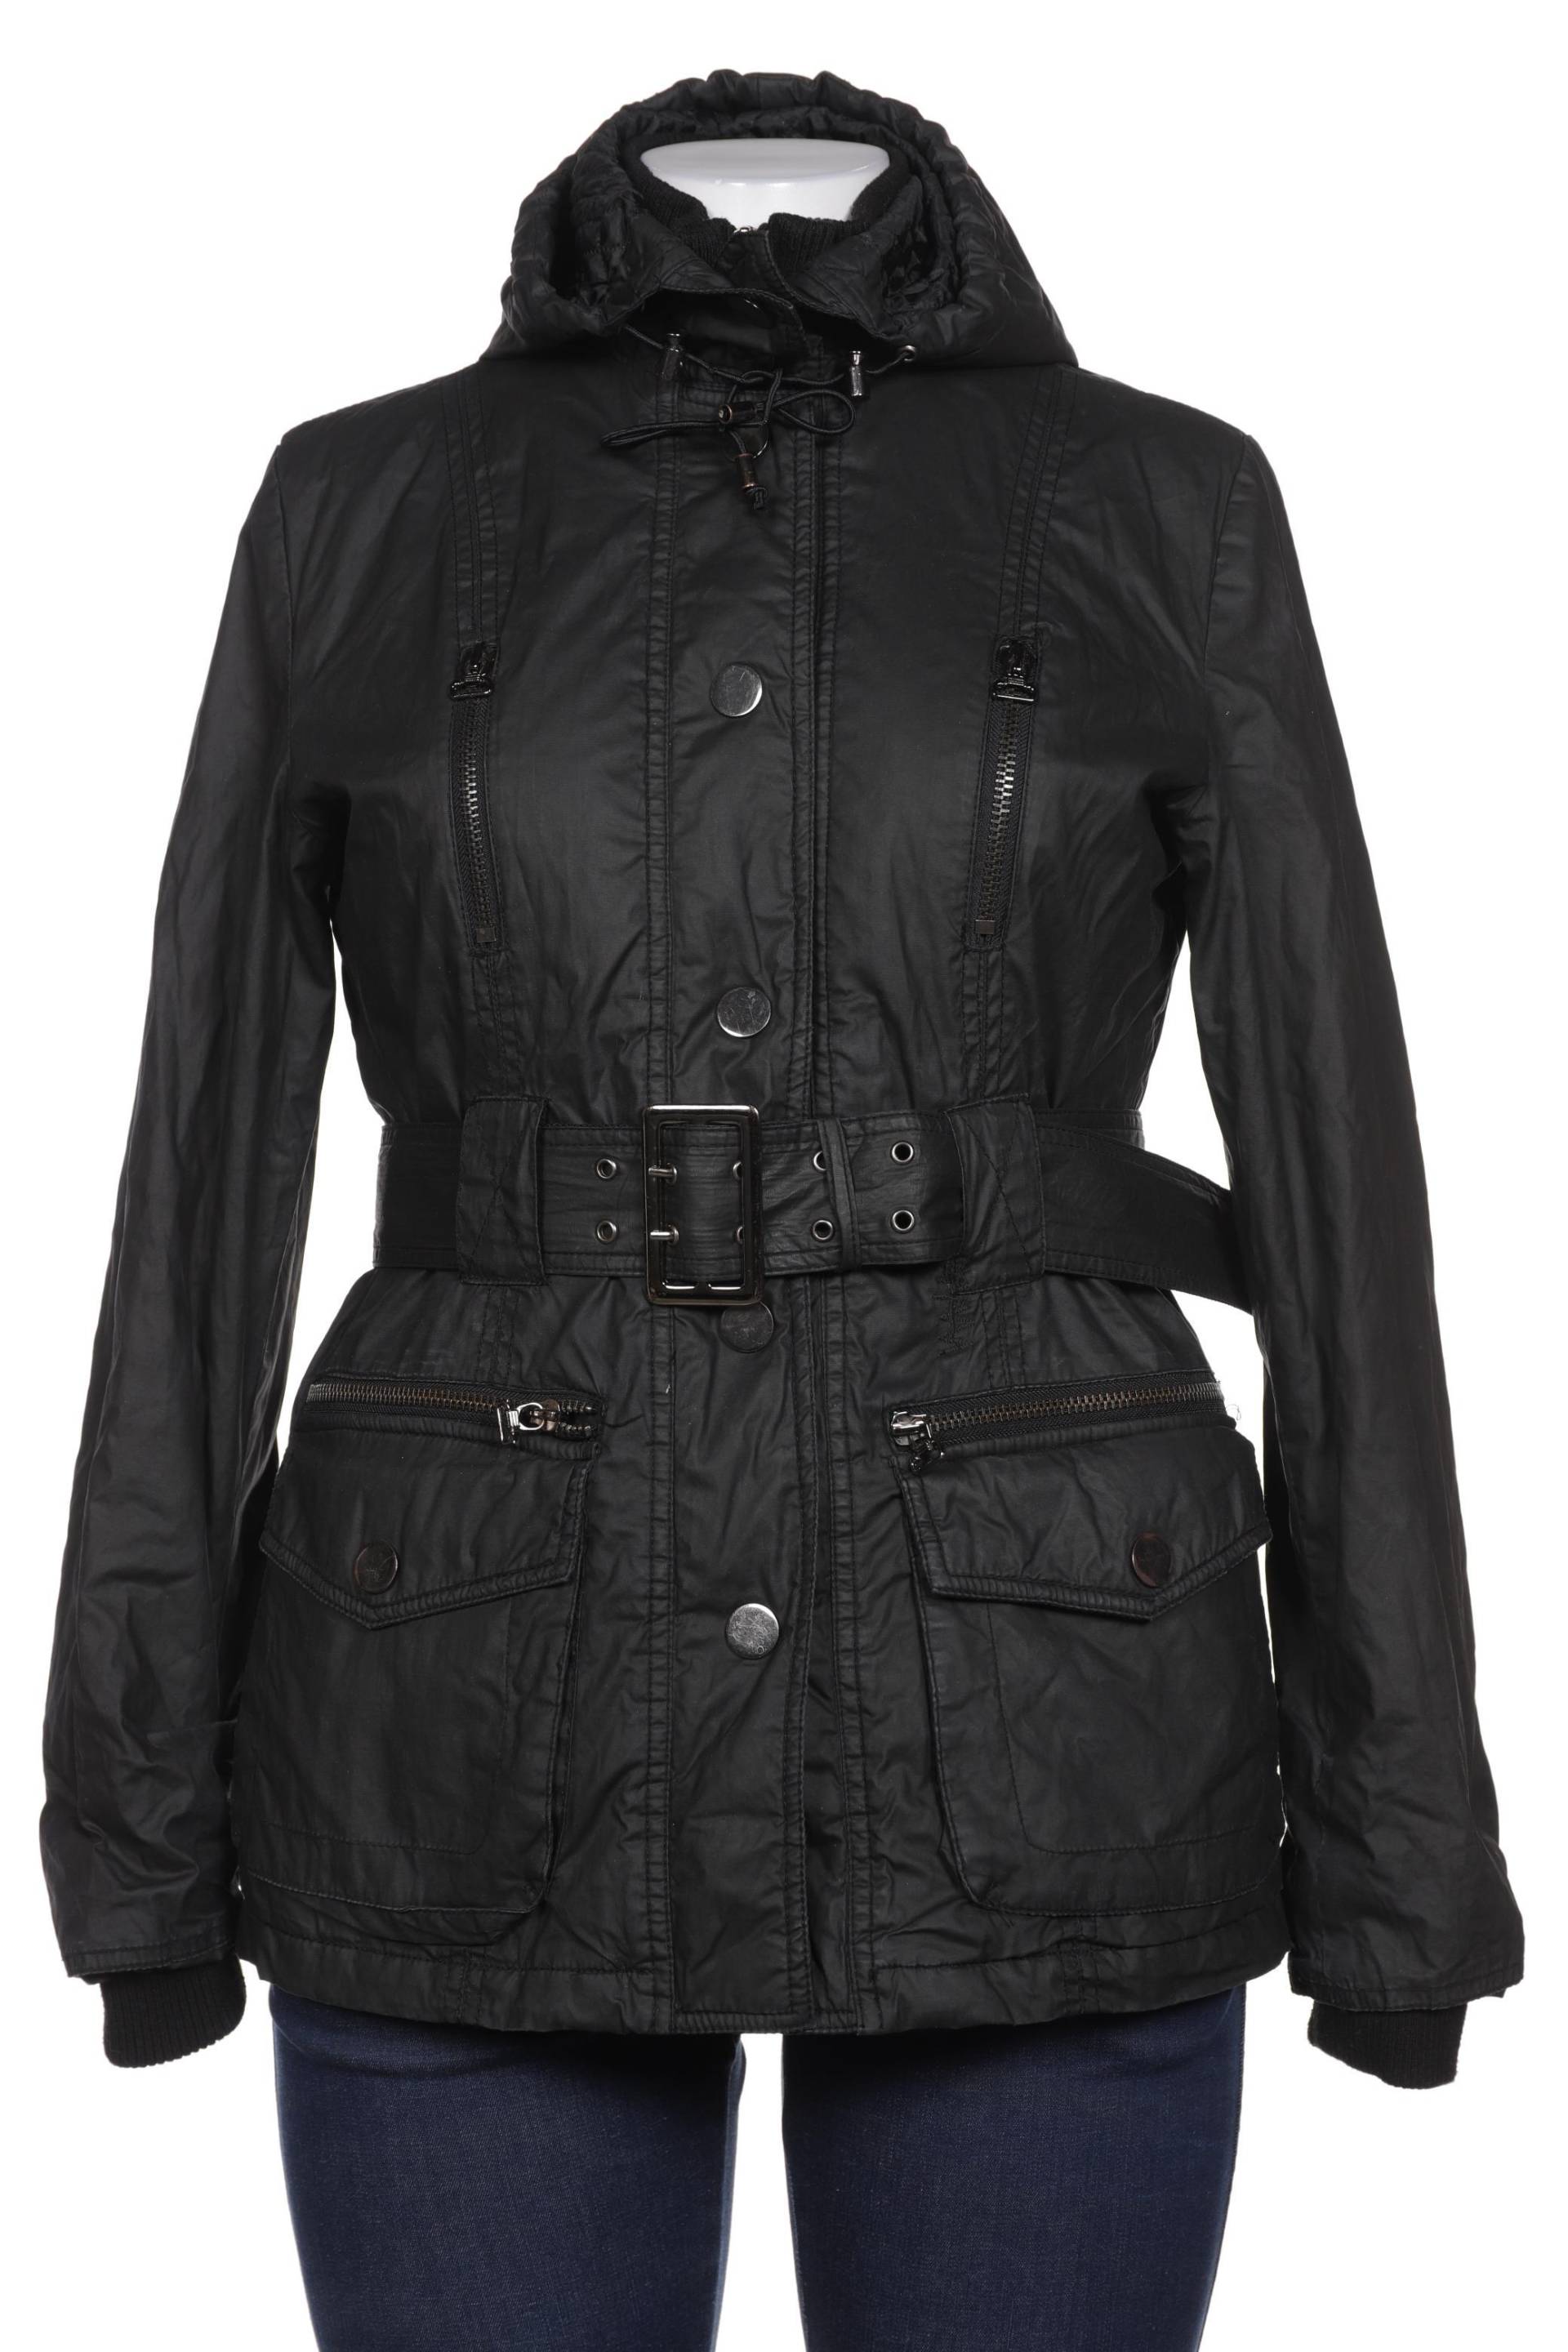 Zara Damen Jacke, schwarz, Gr. 42 von ZARA